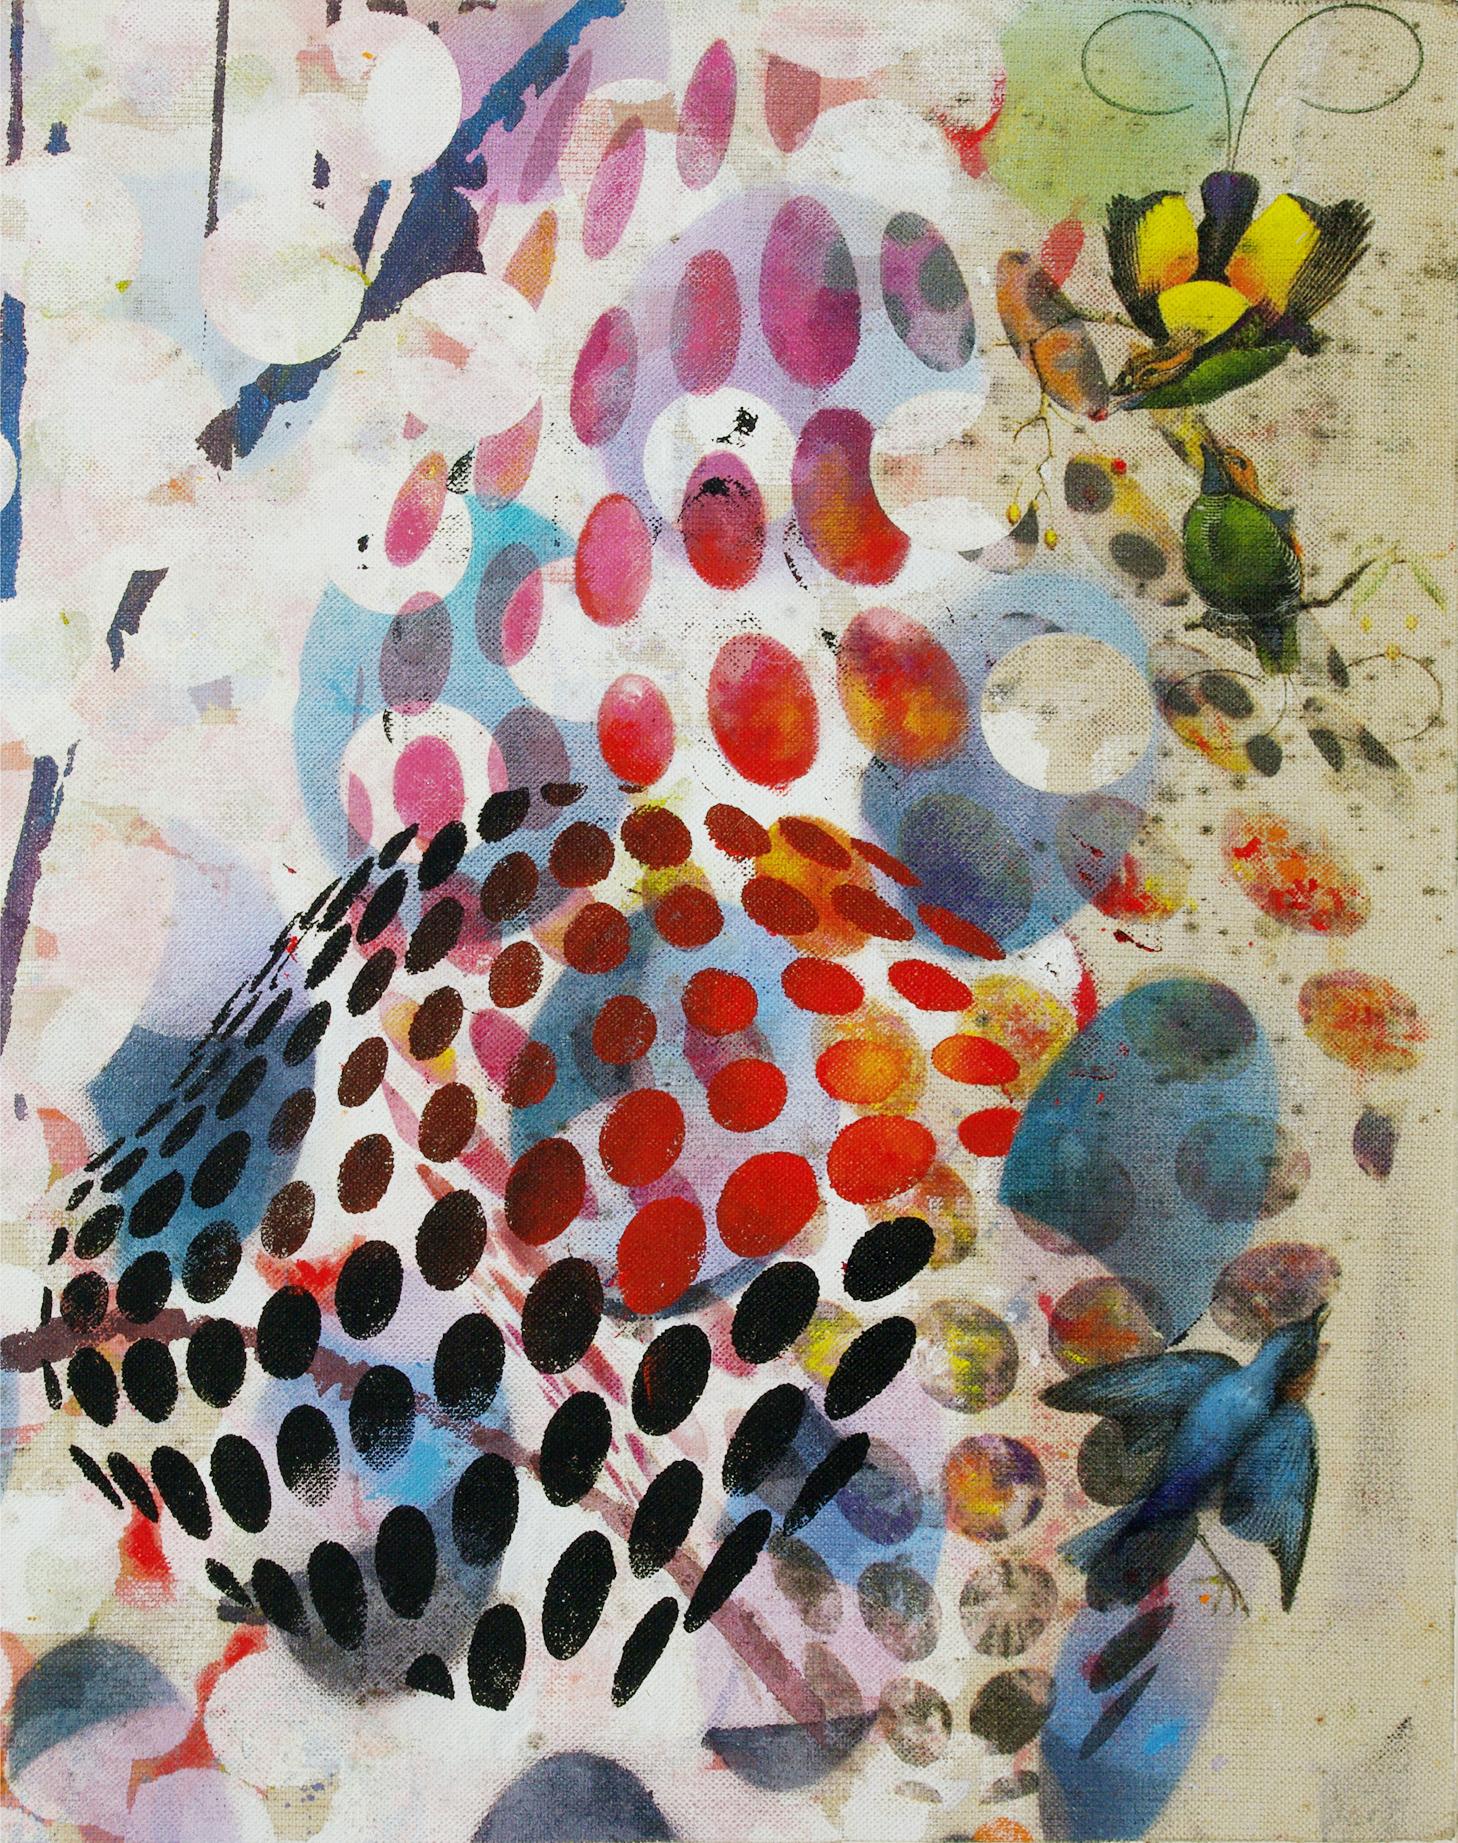 Vogele 026- Zeitgenössisch, abstrakt, expressionistisch, modern, Straßenkunst, surrealistisch